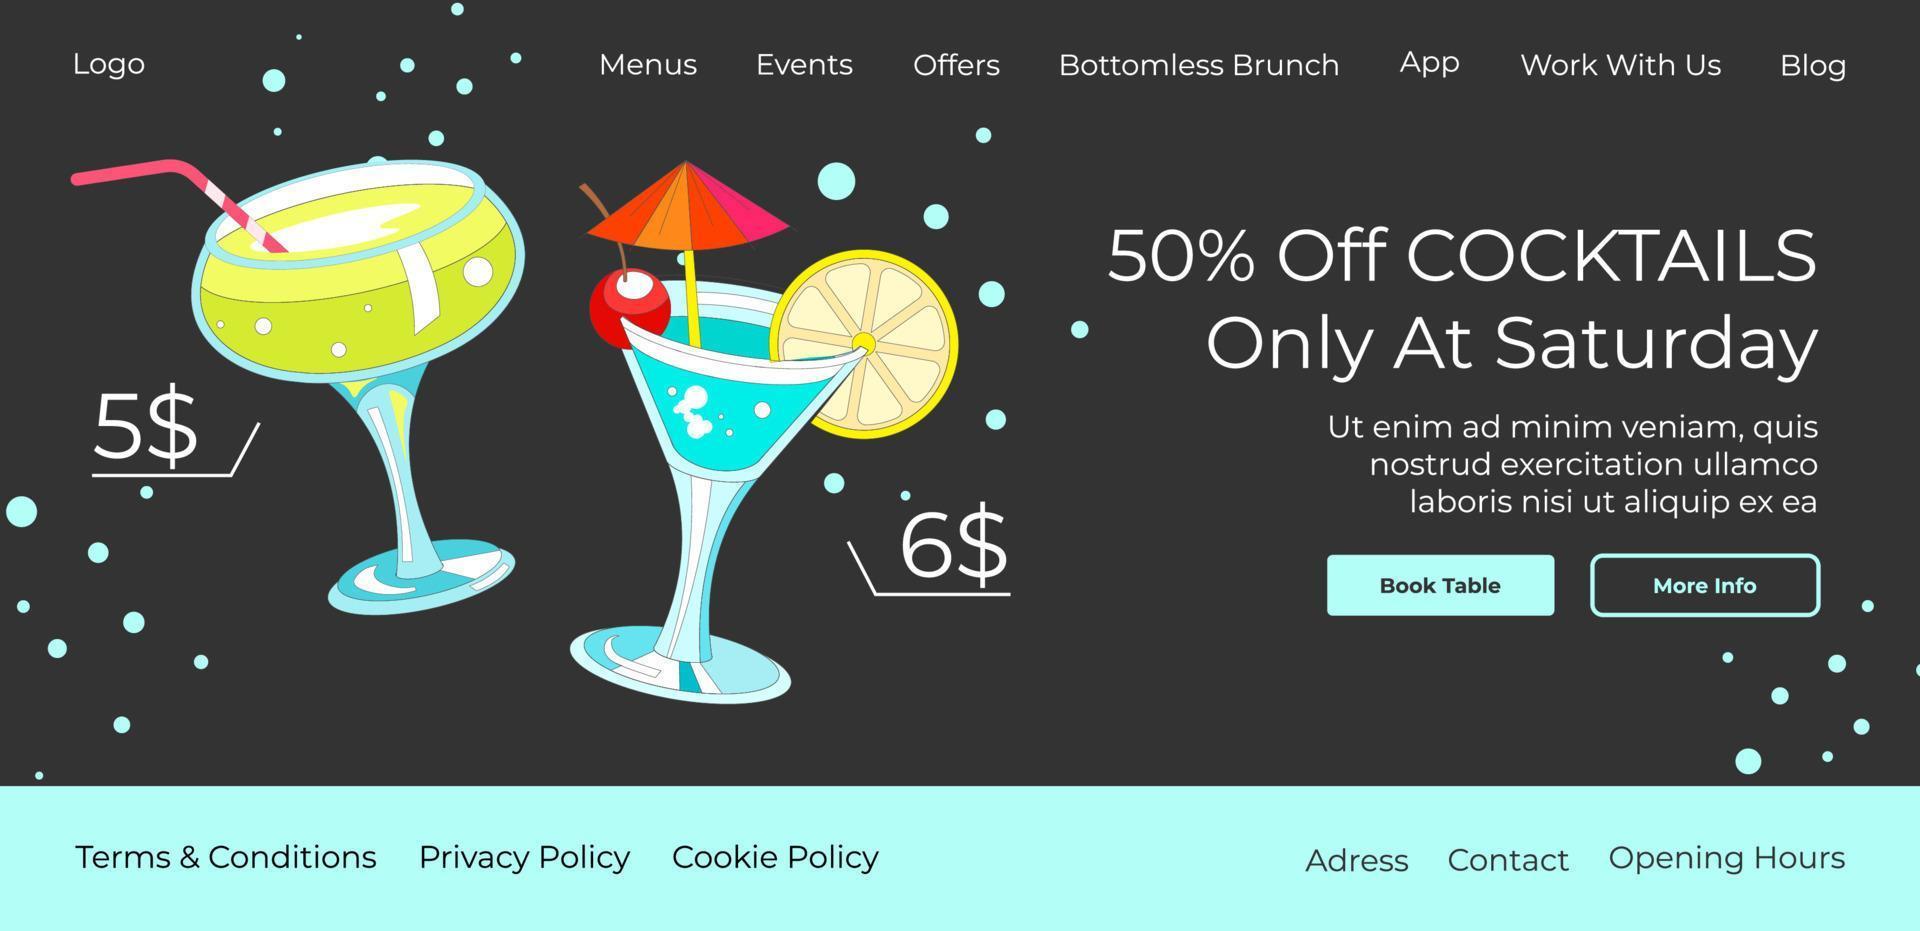 rabatte auf cocktails nur auf der samstags-website vektor